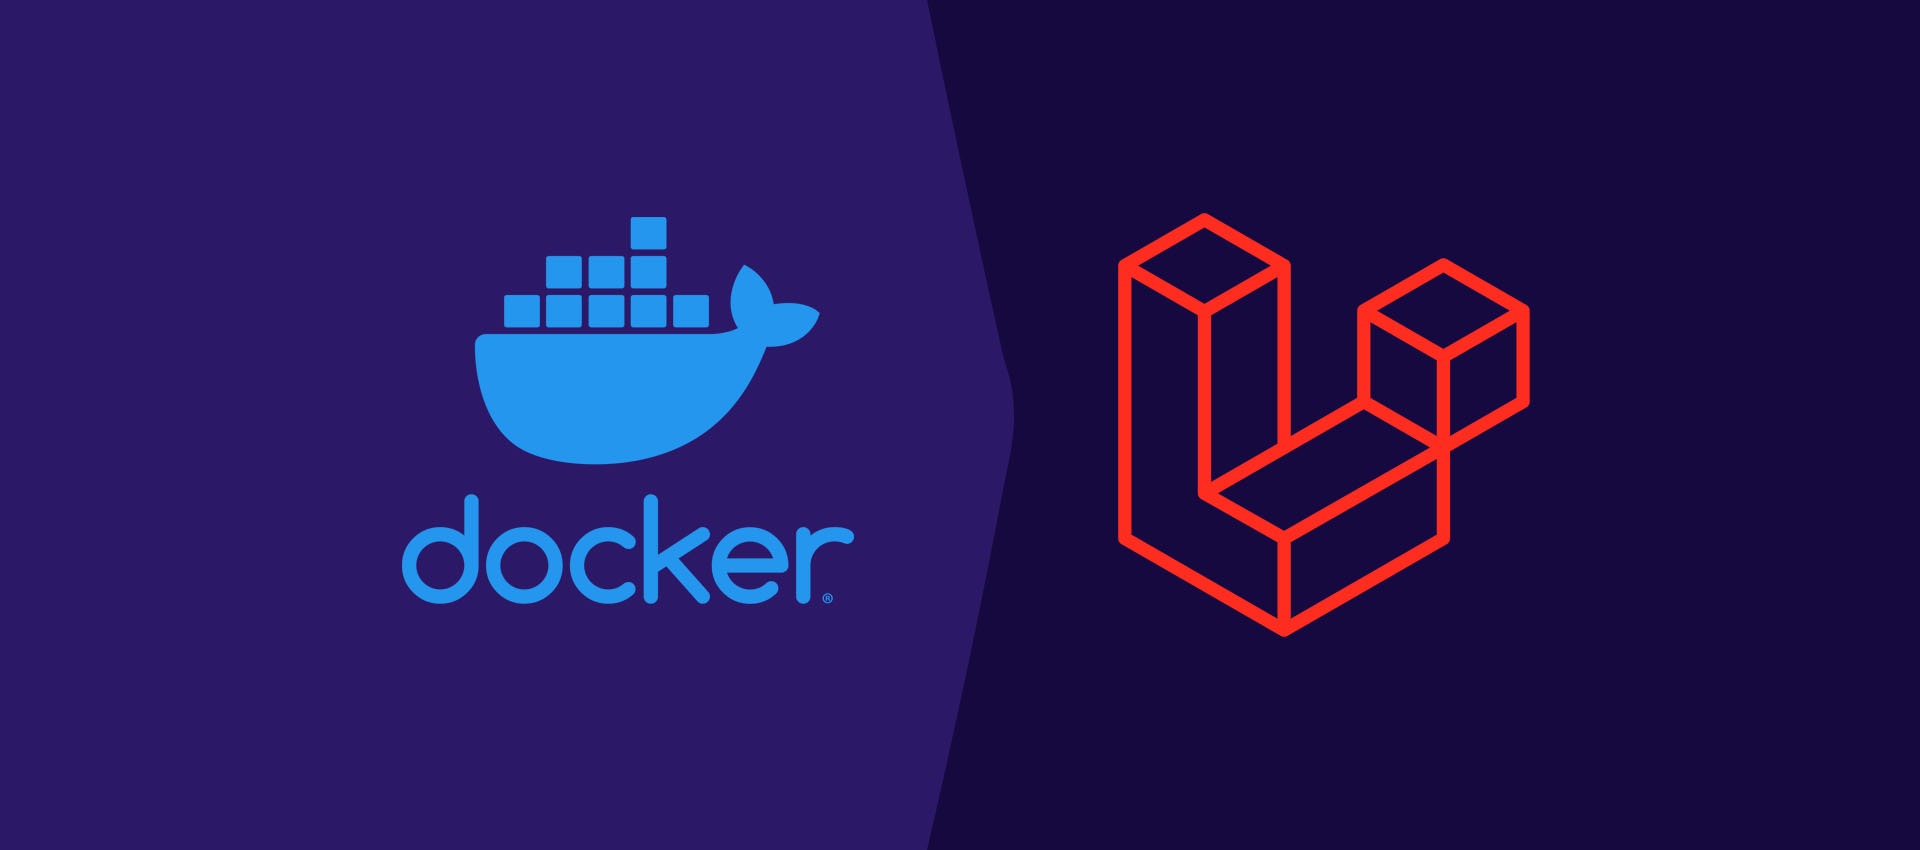 Getting Started With Laravel On Ubuntu Using Docker Engine and Laravel Sail